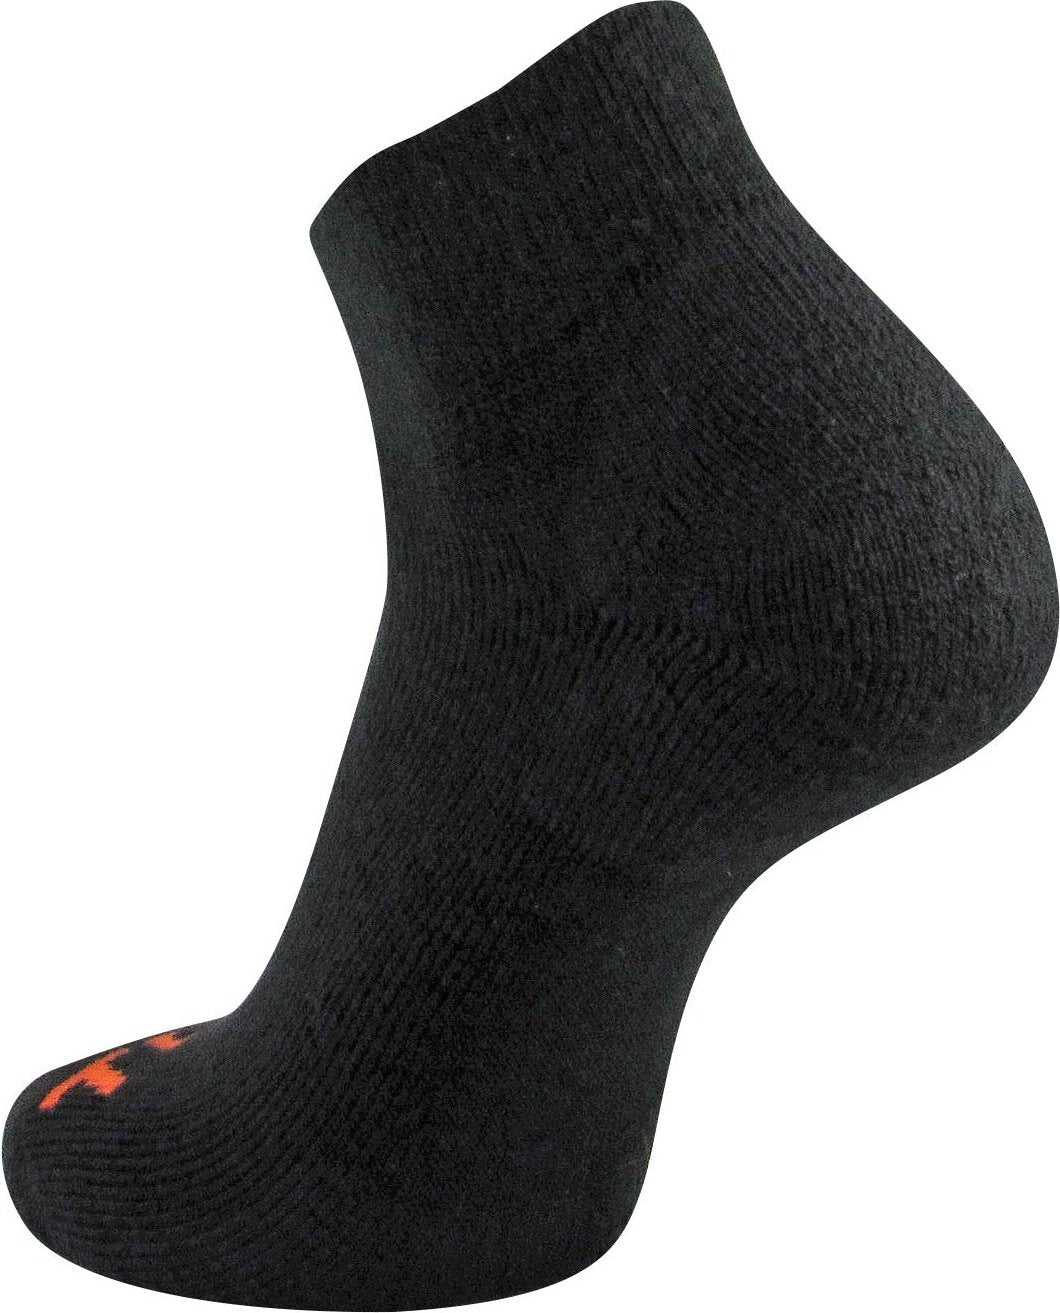 TCK Reacs Acrylic Quarter Socks - Black - HIT a Double